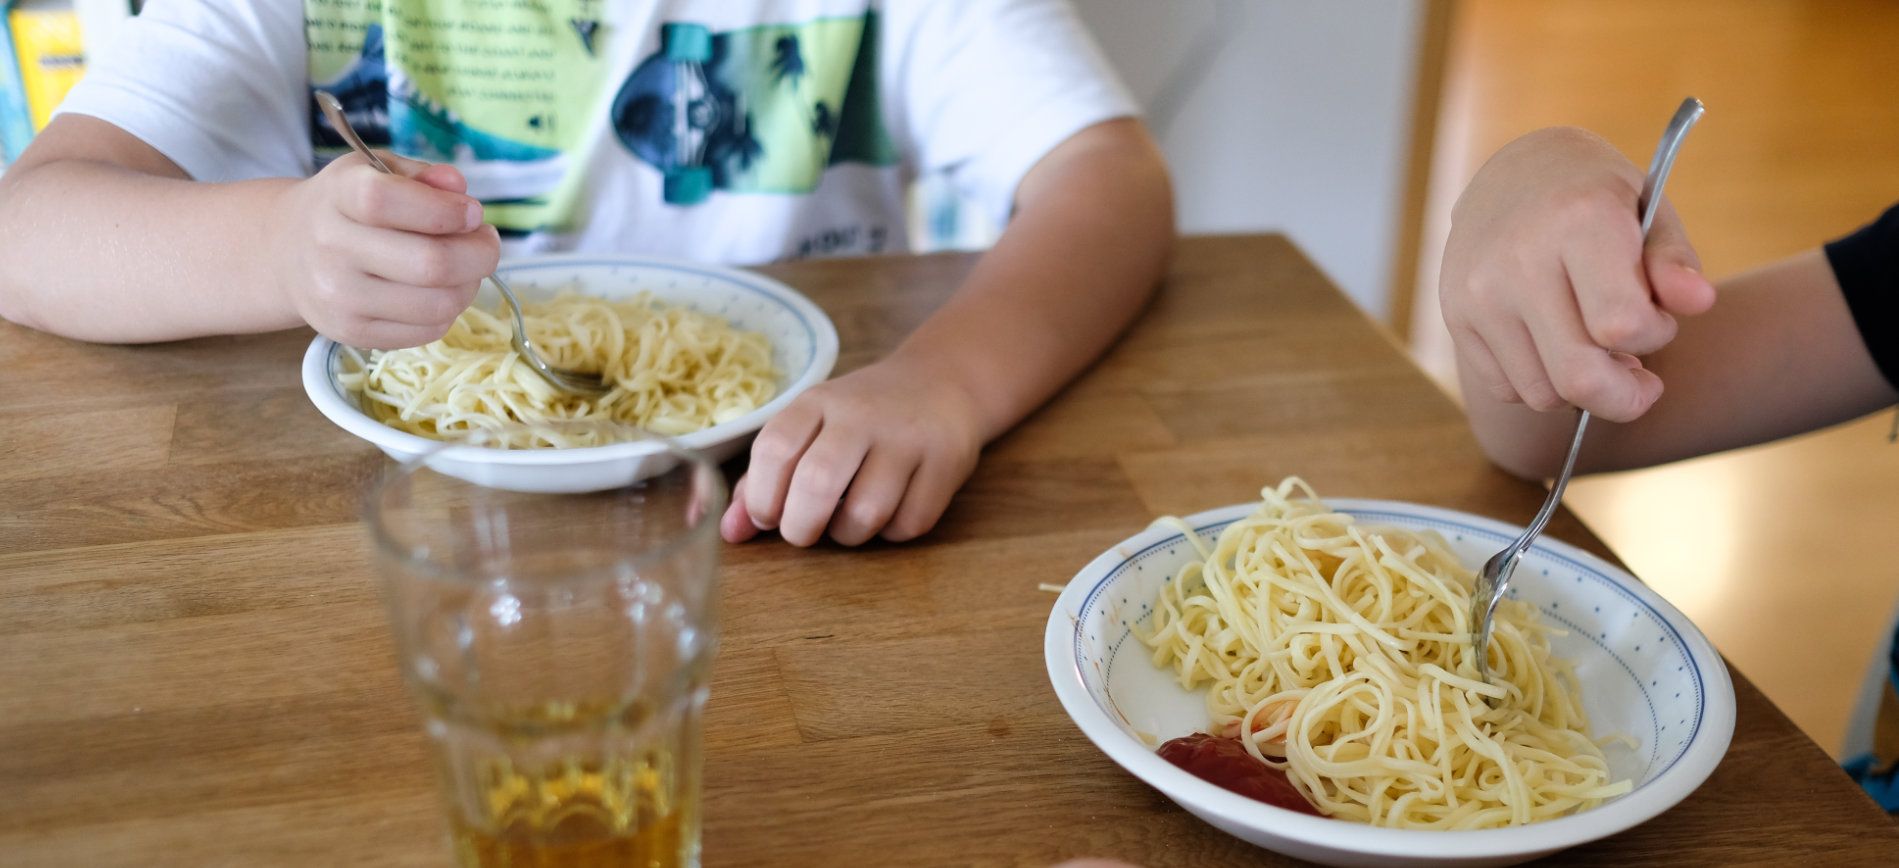 Tischsituation: Kinder essen Nudeln mit einem Klecks Ketchup von einem Teller